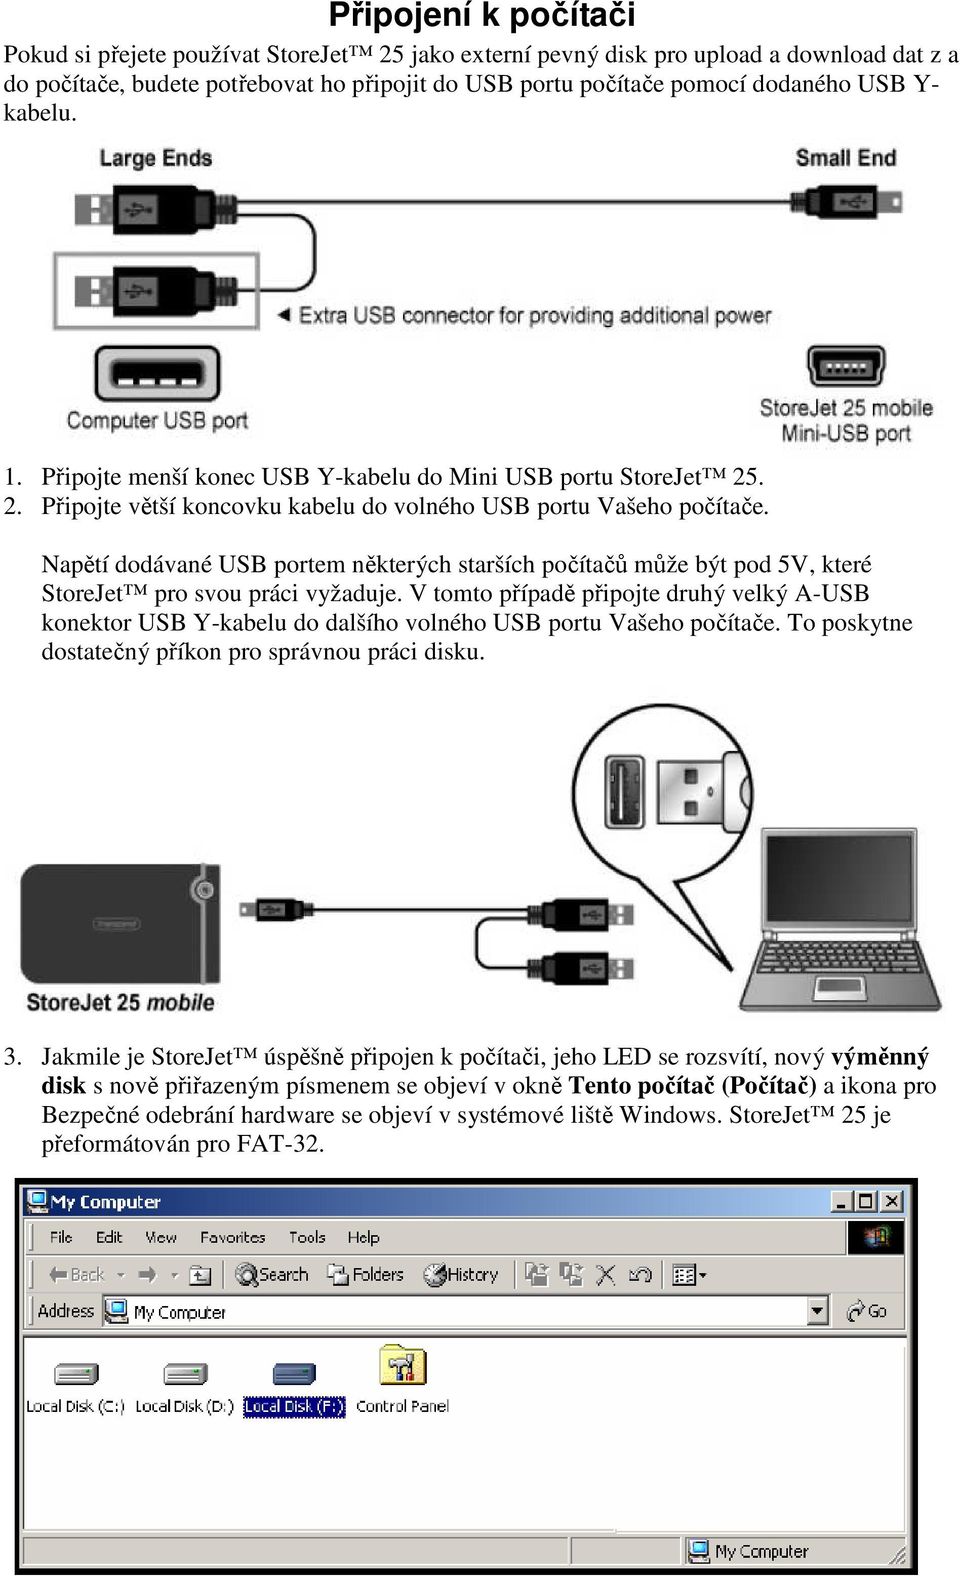 Napětí dodávané USB portem některých starších počítačů může být pod 5V, které StoreJet pro svou práci vyžaduje.